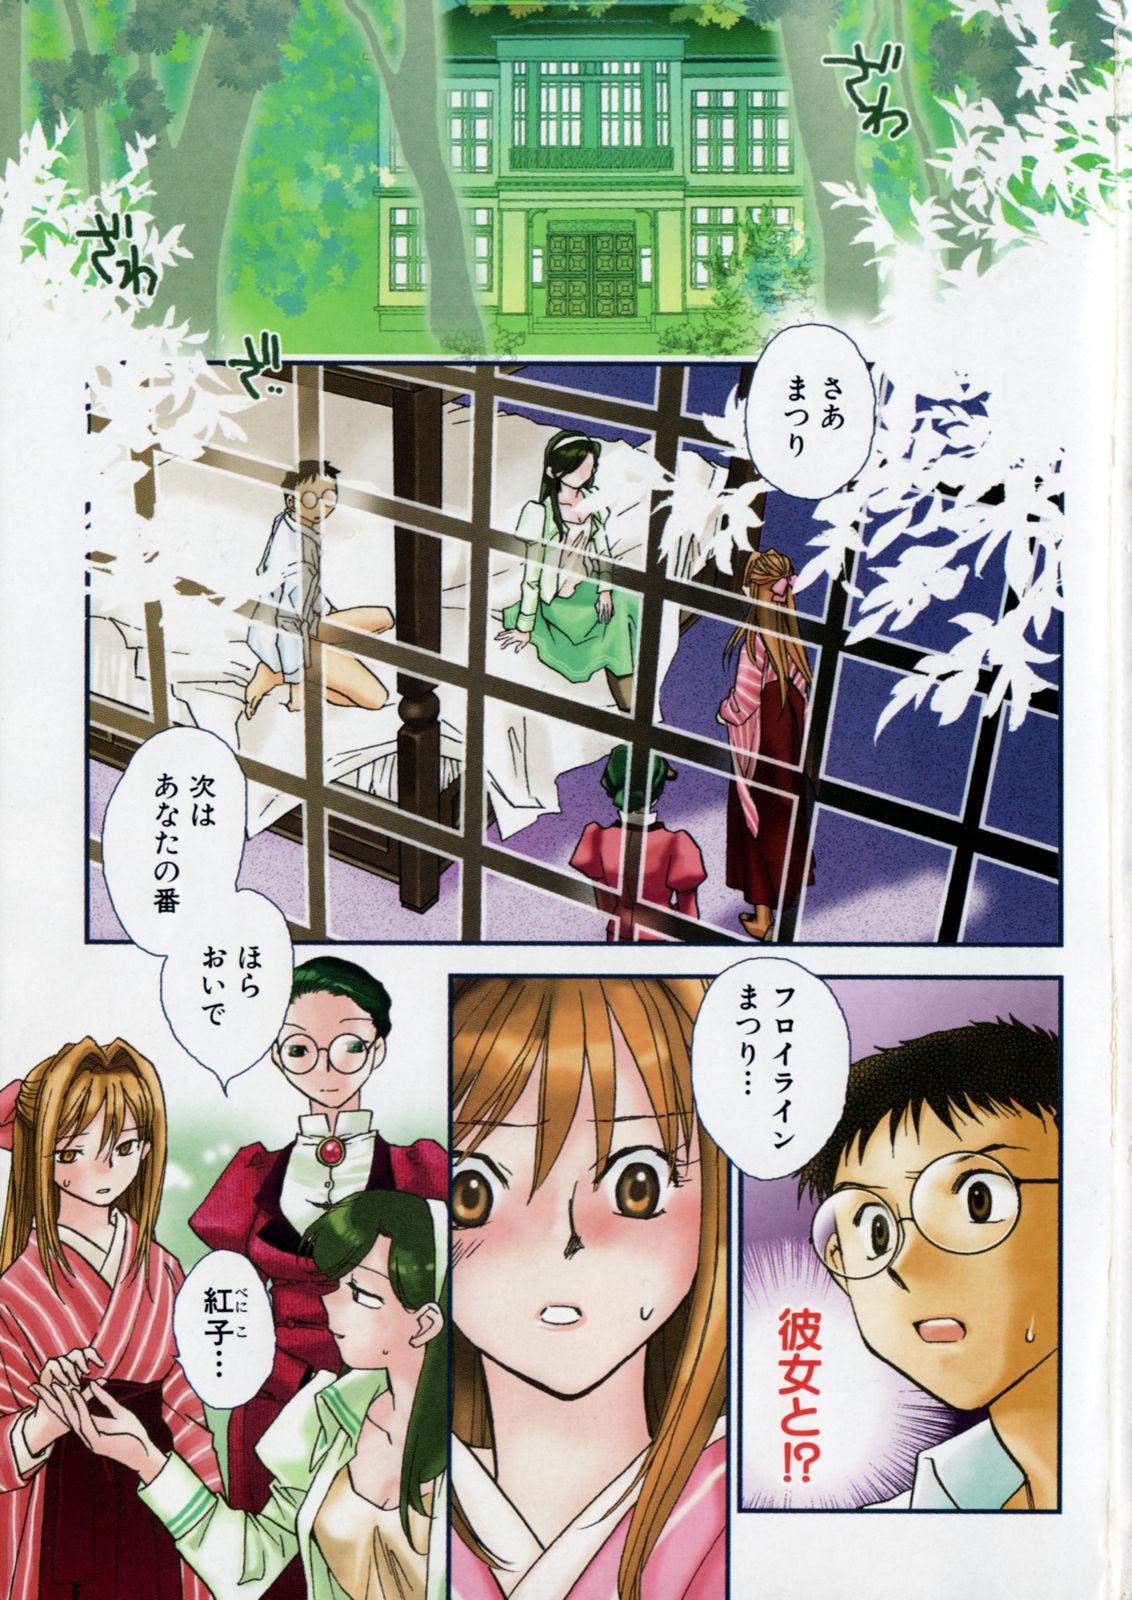 [Okano Ahiru] Hanasake ! Otome Juku (Otome Private Tutoring School) Vol.2 2